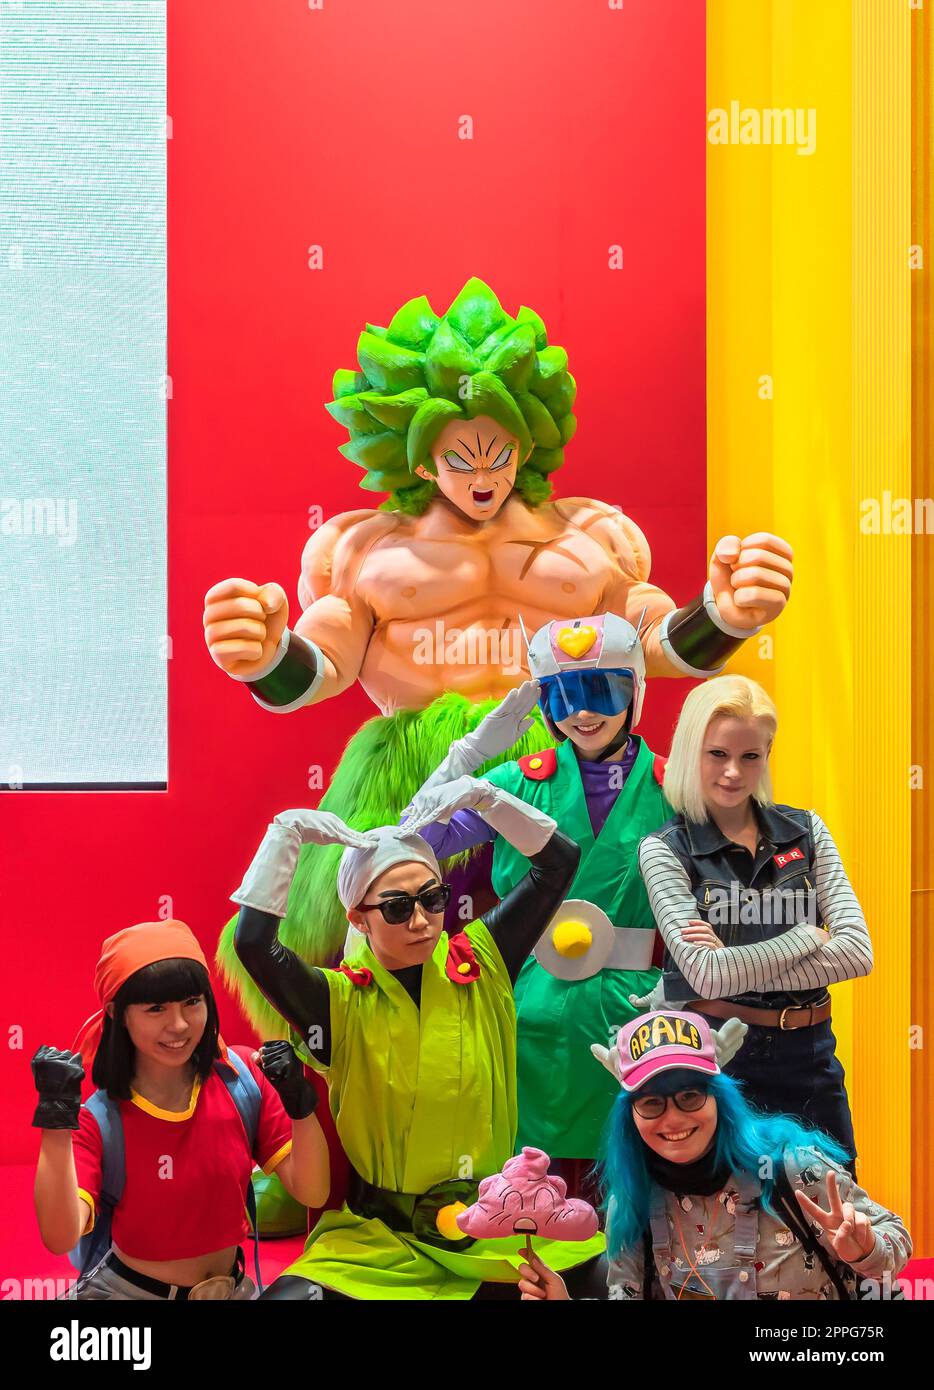 chiba, giappone - 22 dicembre 2018: Gruppo di giovani cosplayer che indossano costumi e parrucche dei personaggi del manga giapponese e della serie anime di Dragon Ball durante la convention Jump Festa 19. Foto Stock